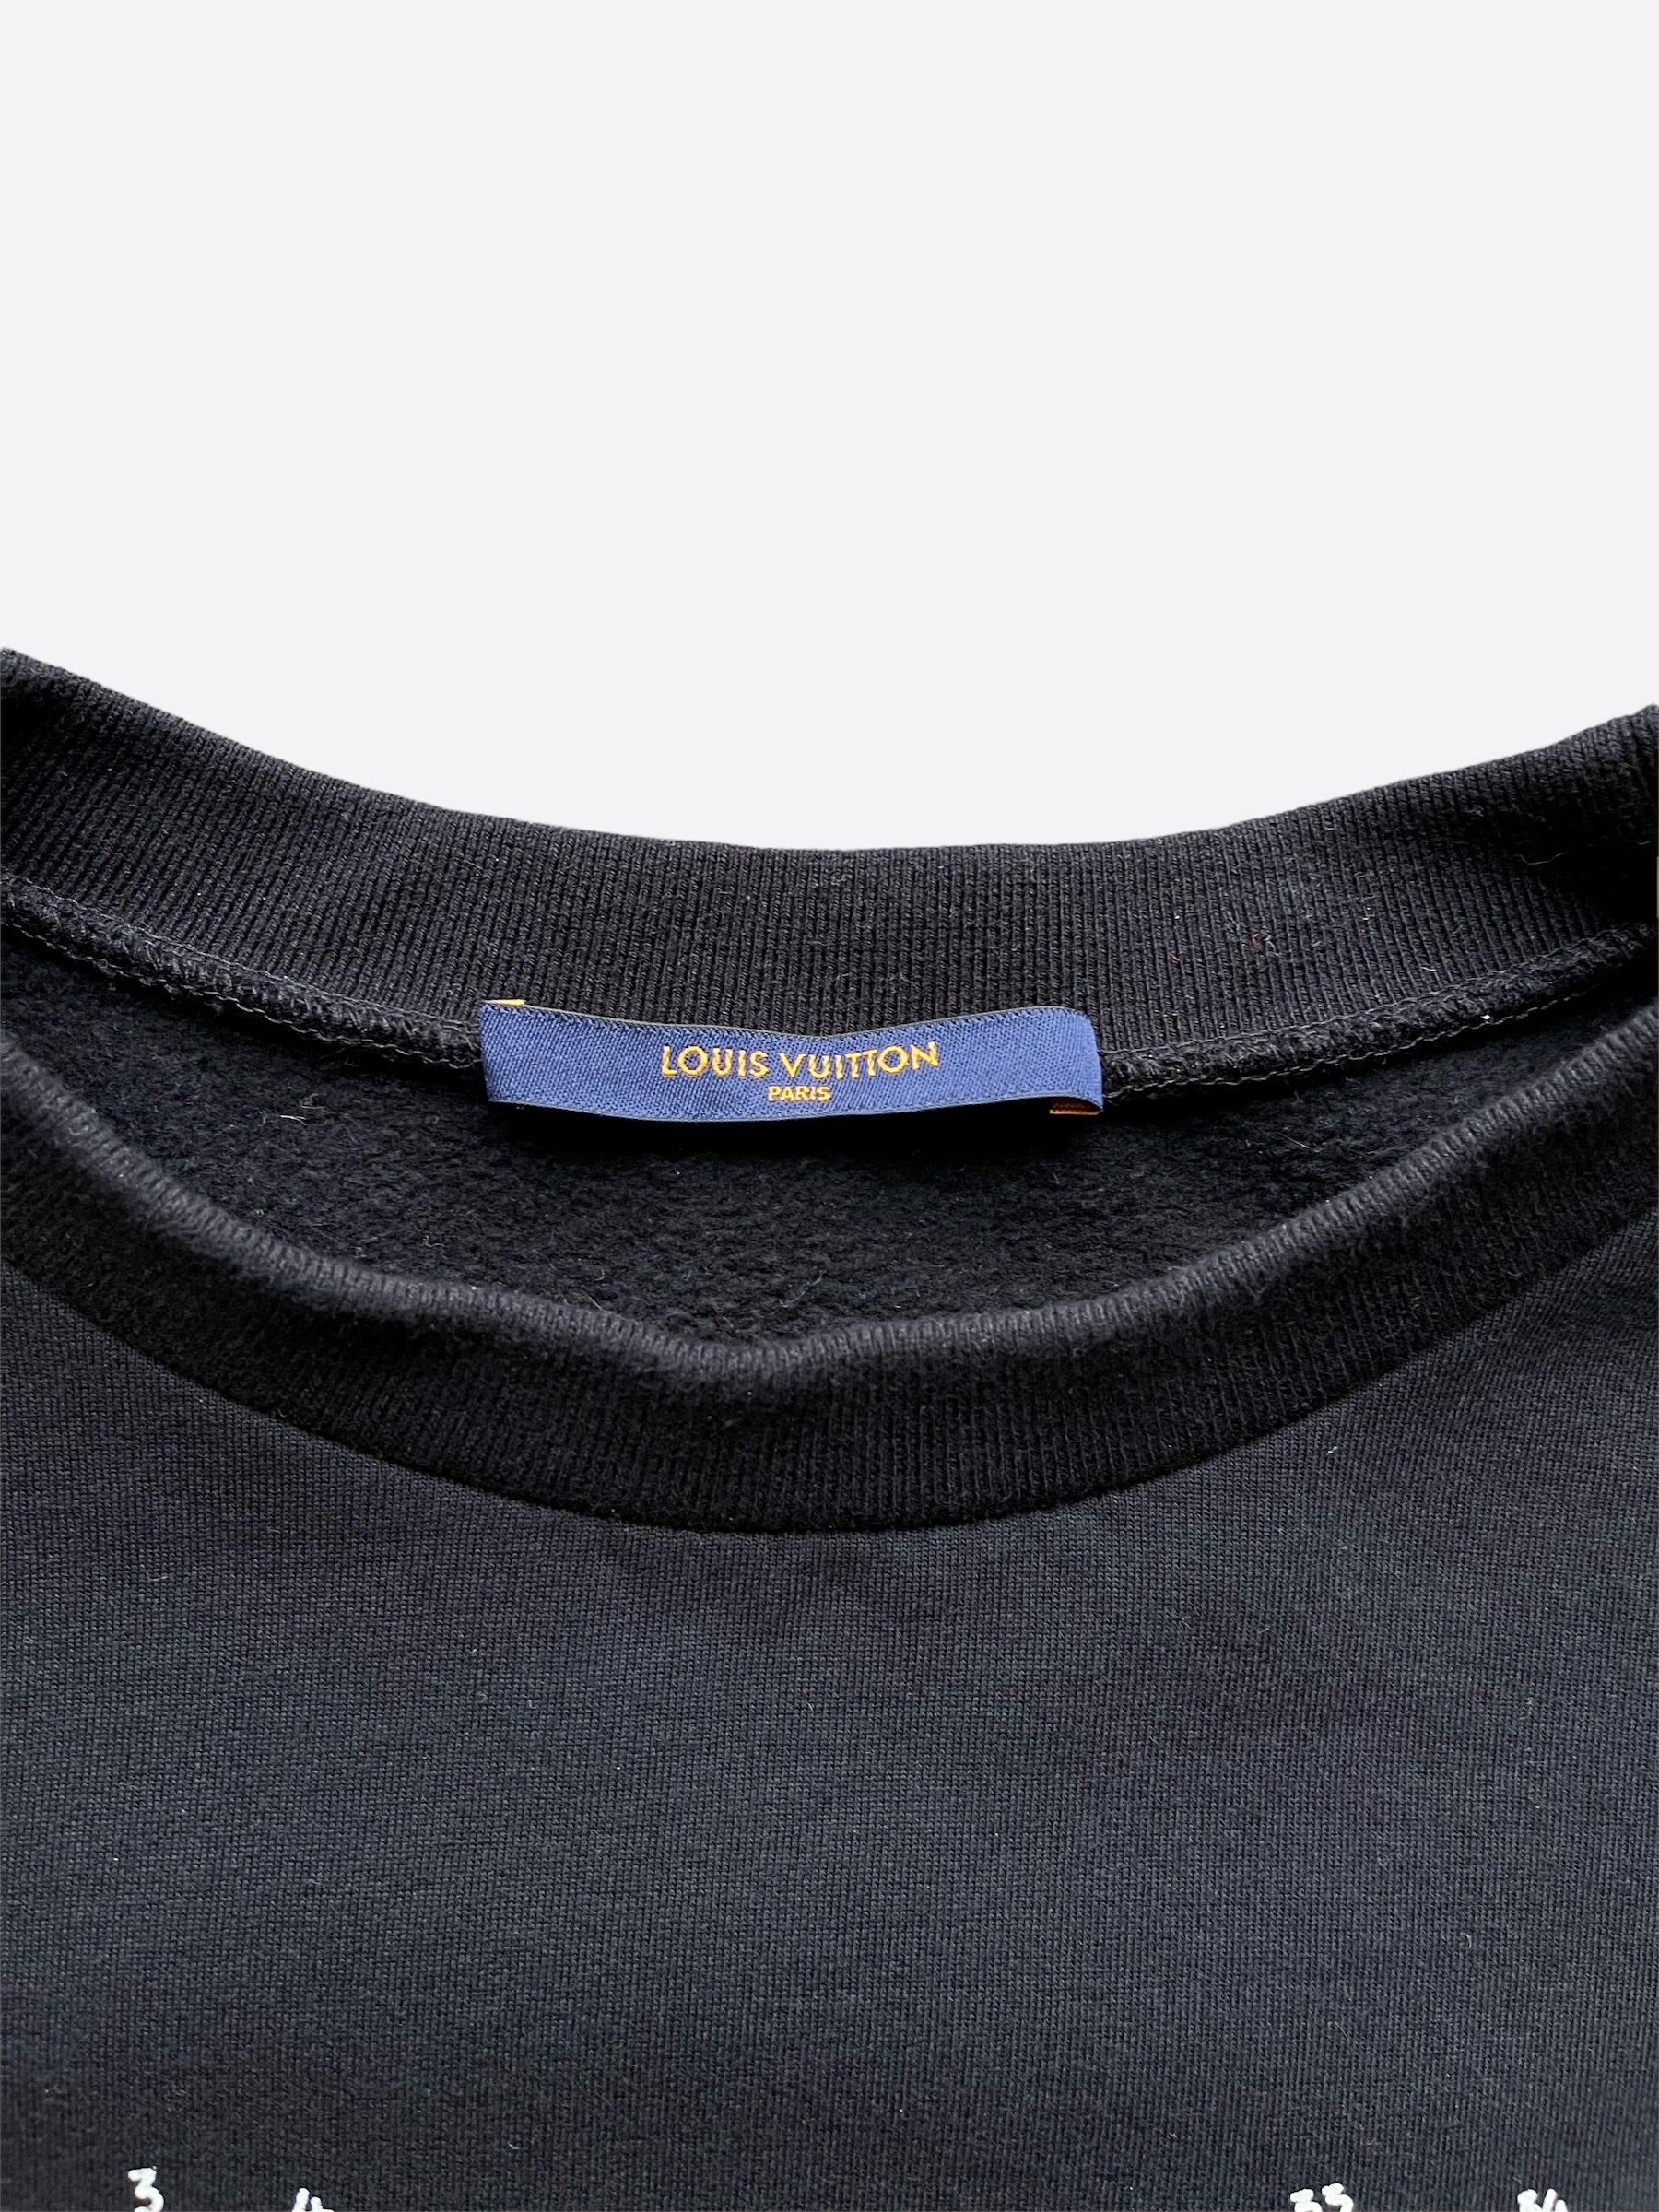 Louis Vuitton Damier Stitch Crewneck BLACK. Size Xs